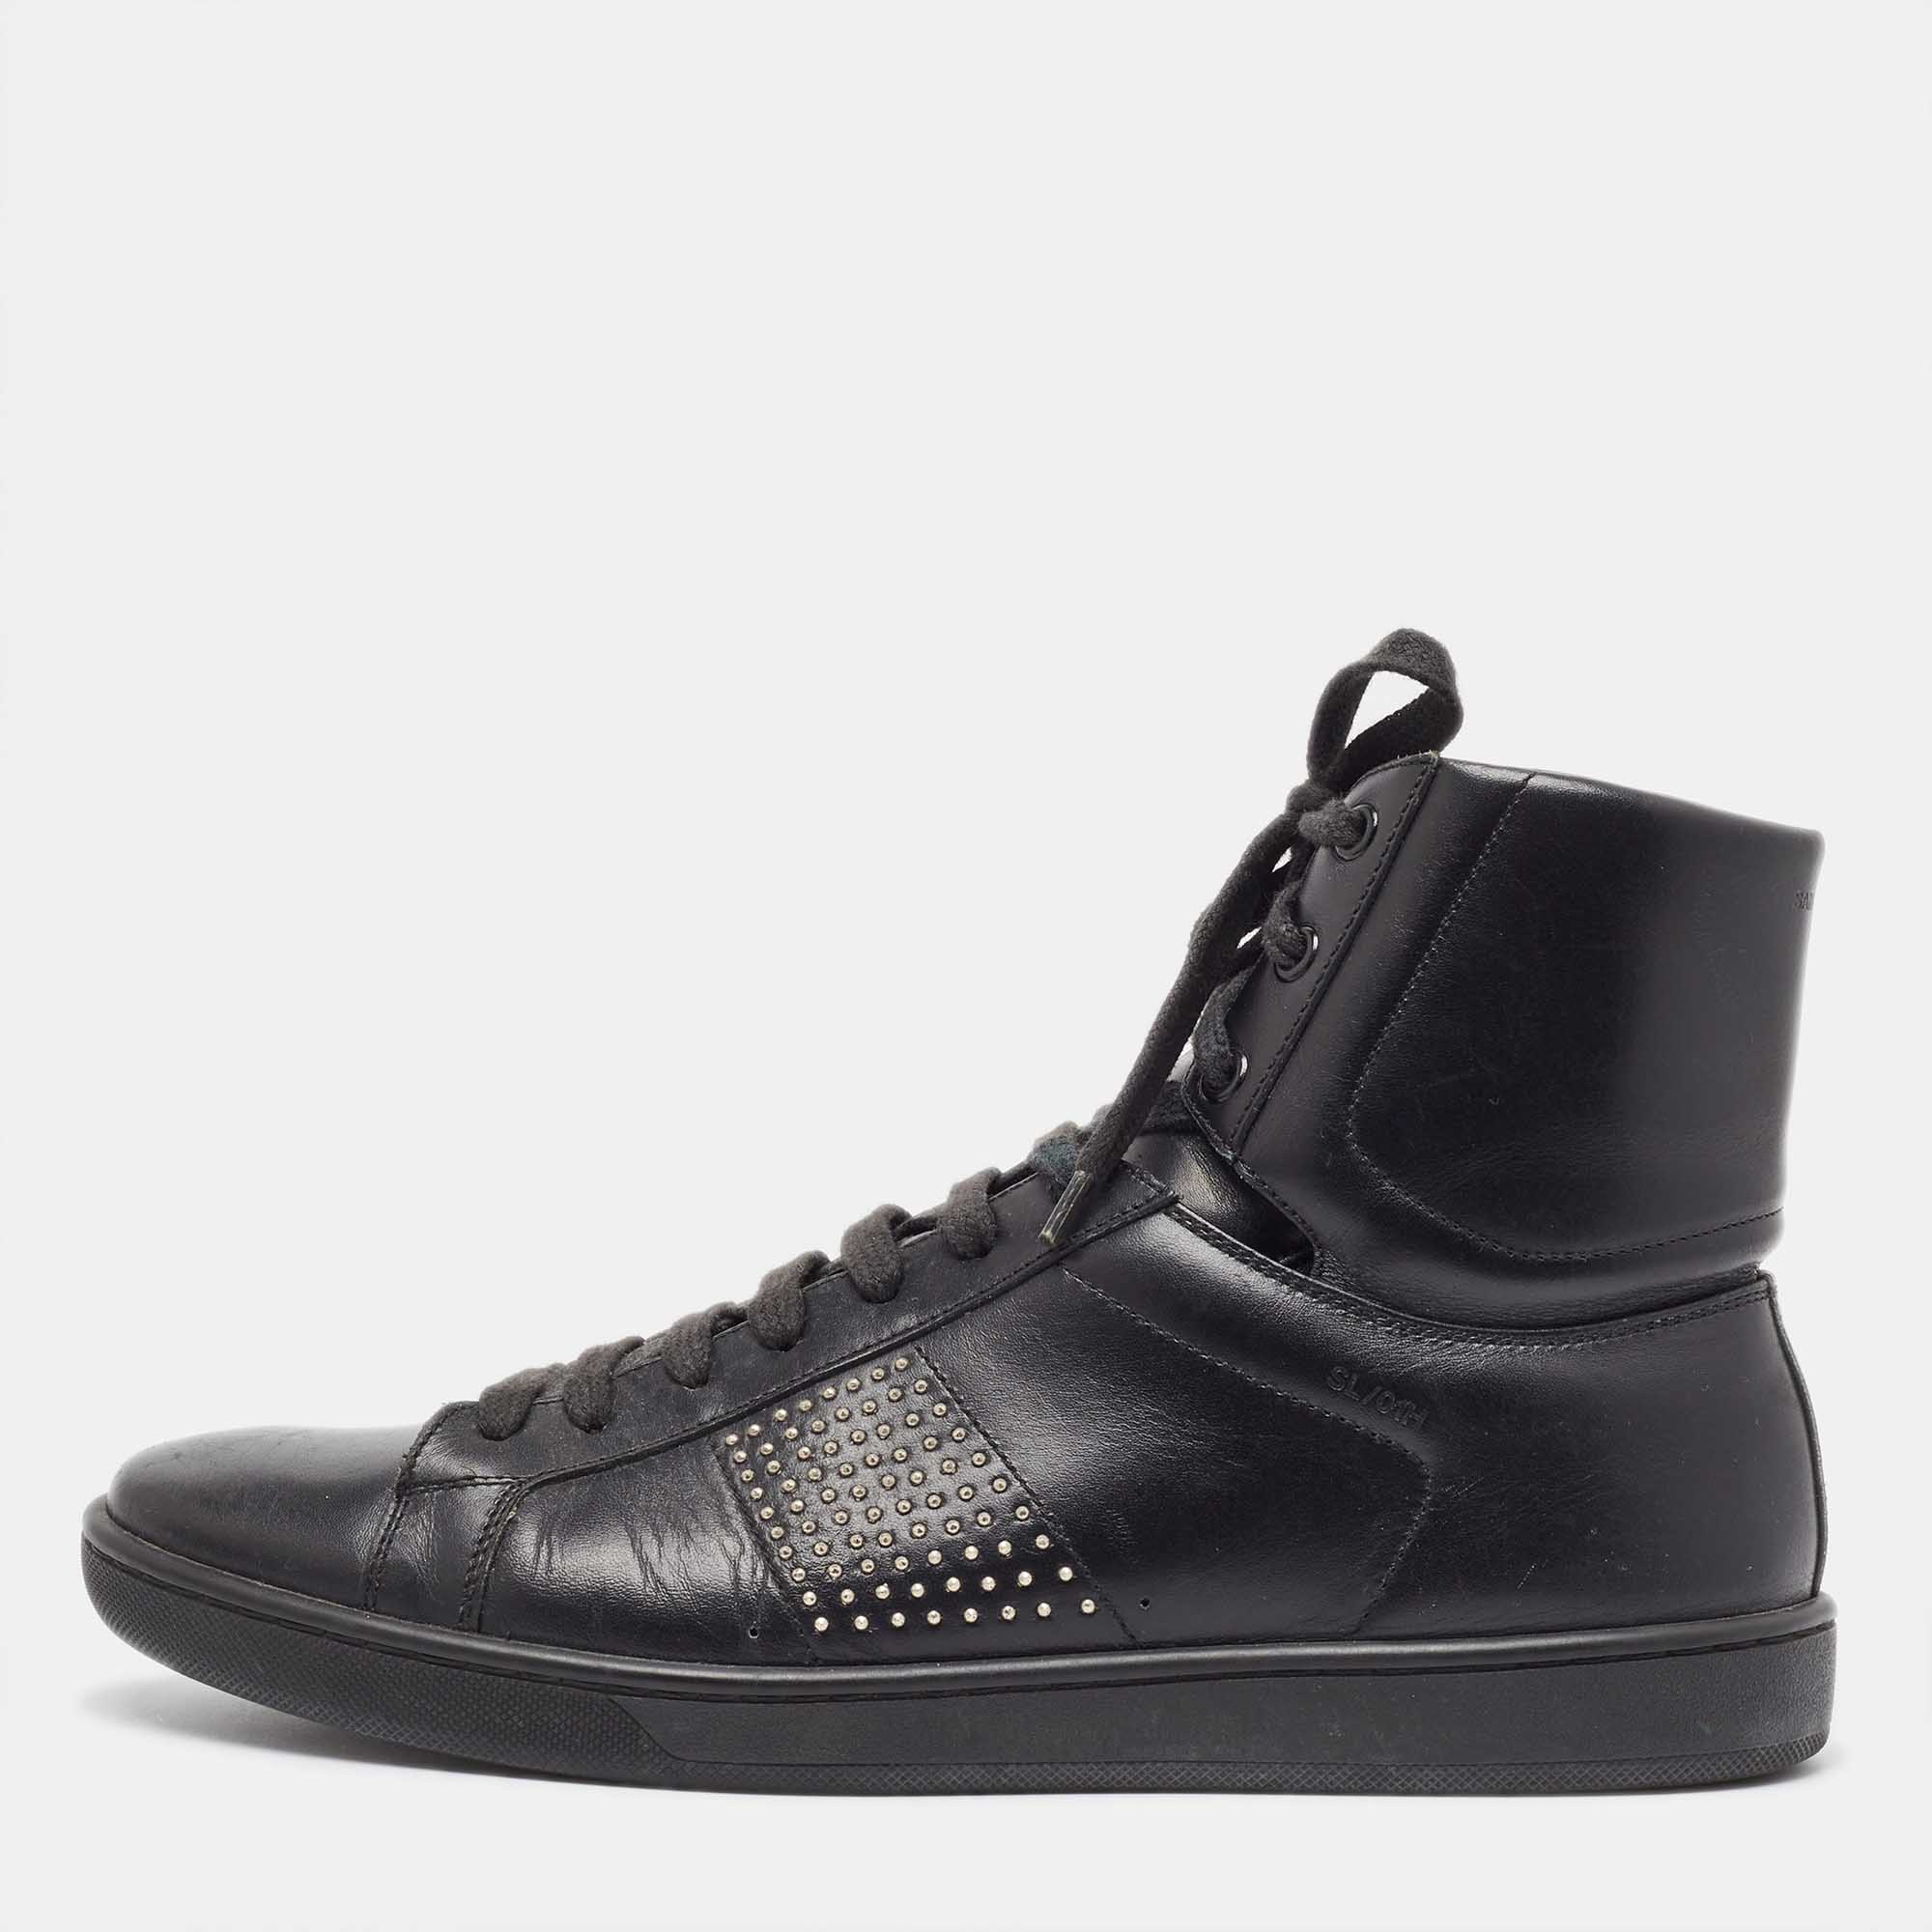 Saint laurent paris yves saint laurent black leather studded high top sneakers size 42